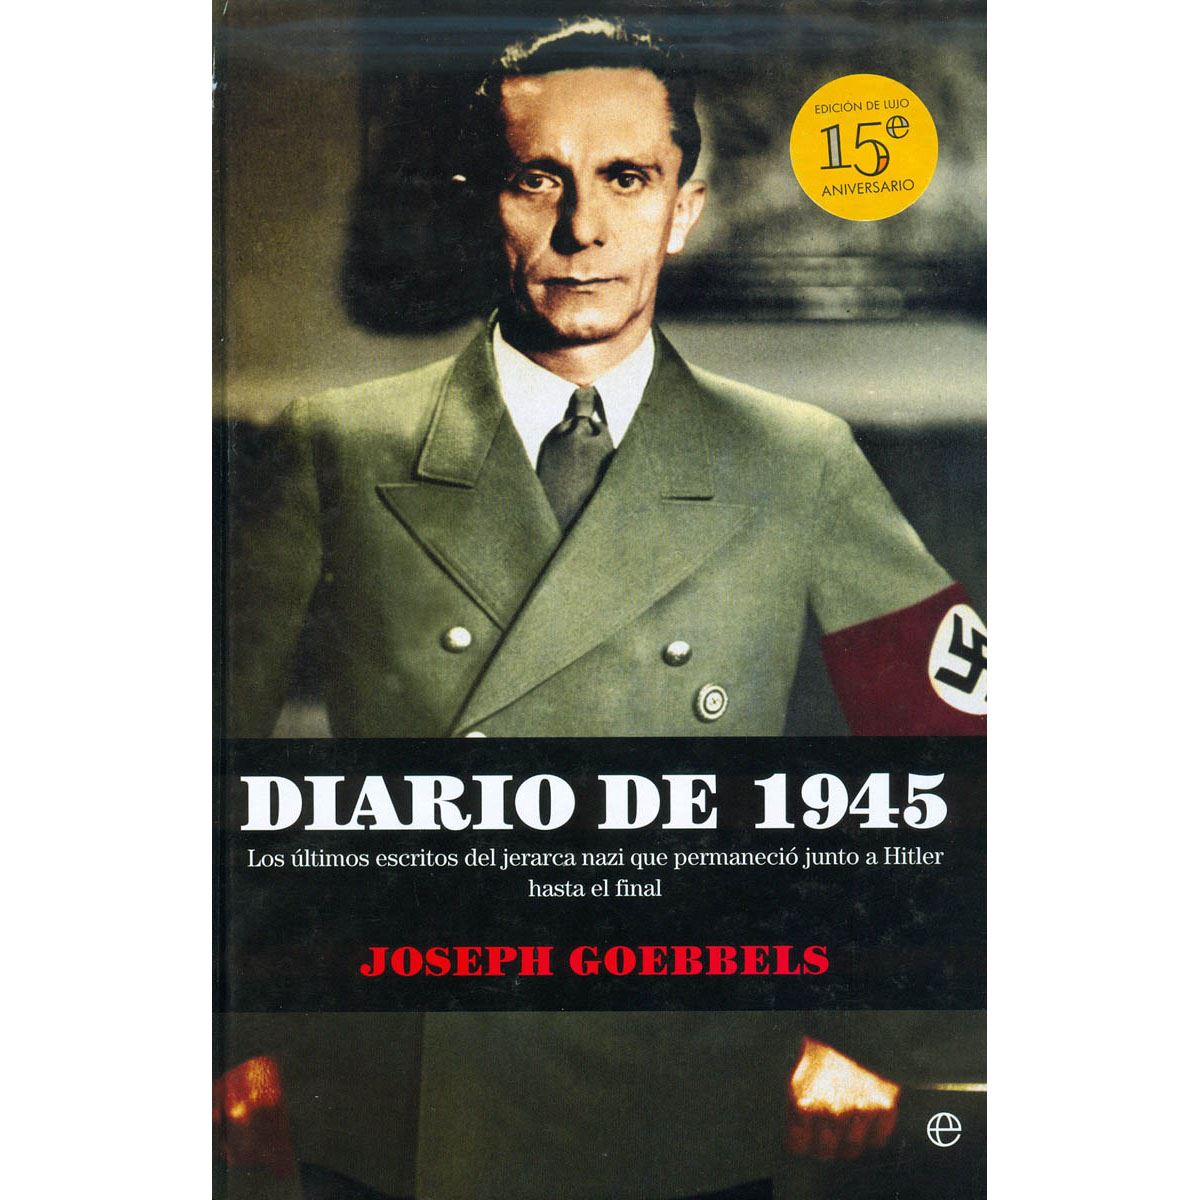 Diario de 1945 (Ed. 15° aniversario)